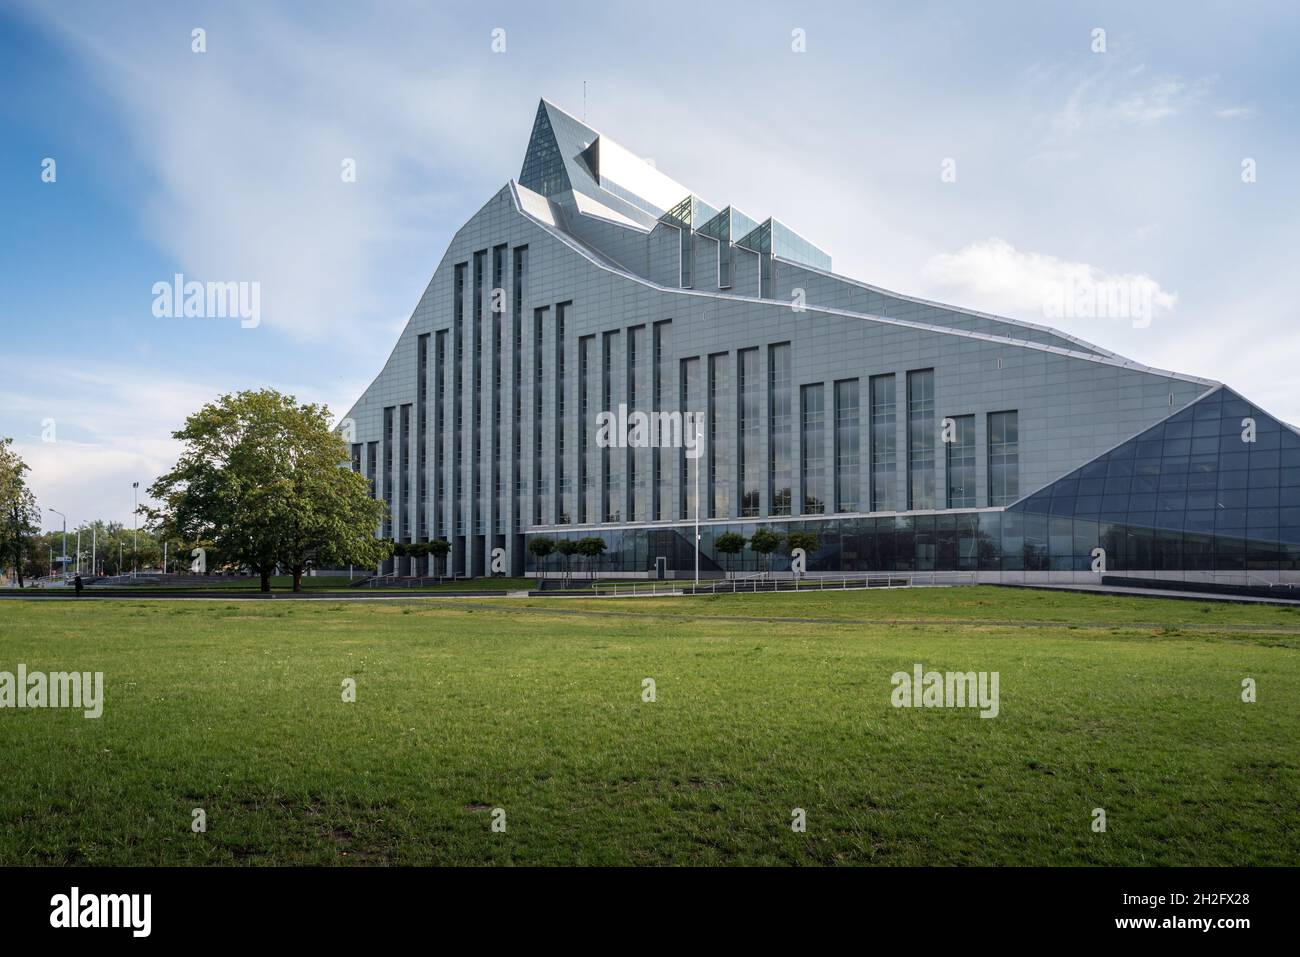 Bibliothèque nationale de Lettonie également connue sous le nom de Château de lumière - Riga, Lettonie Banque D'Images